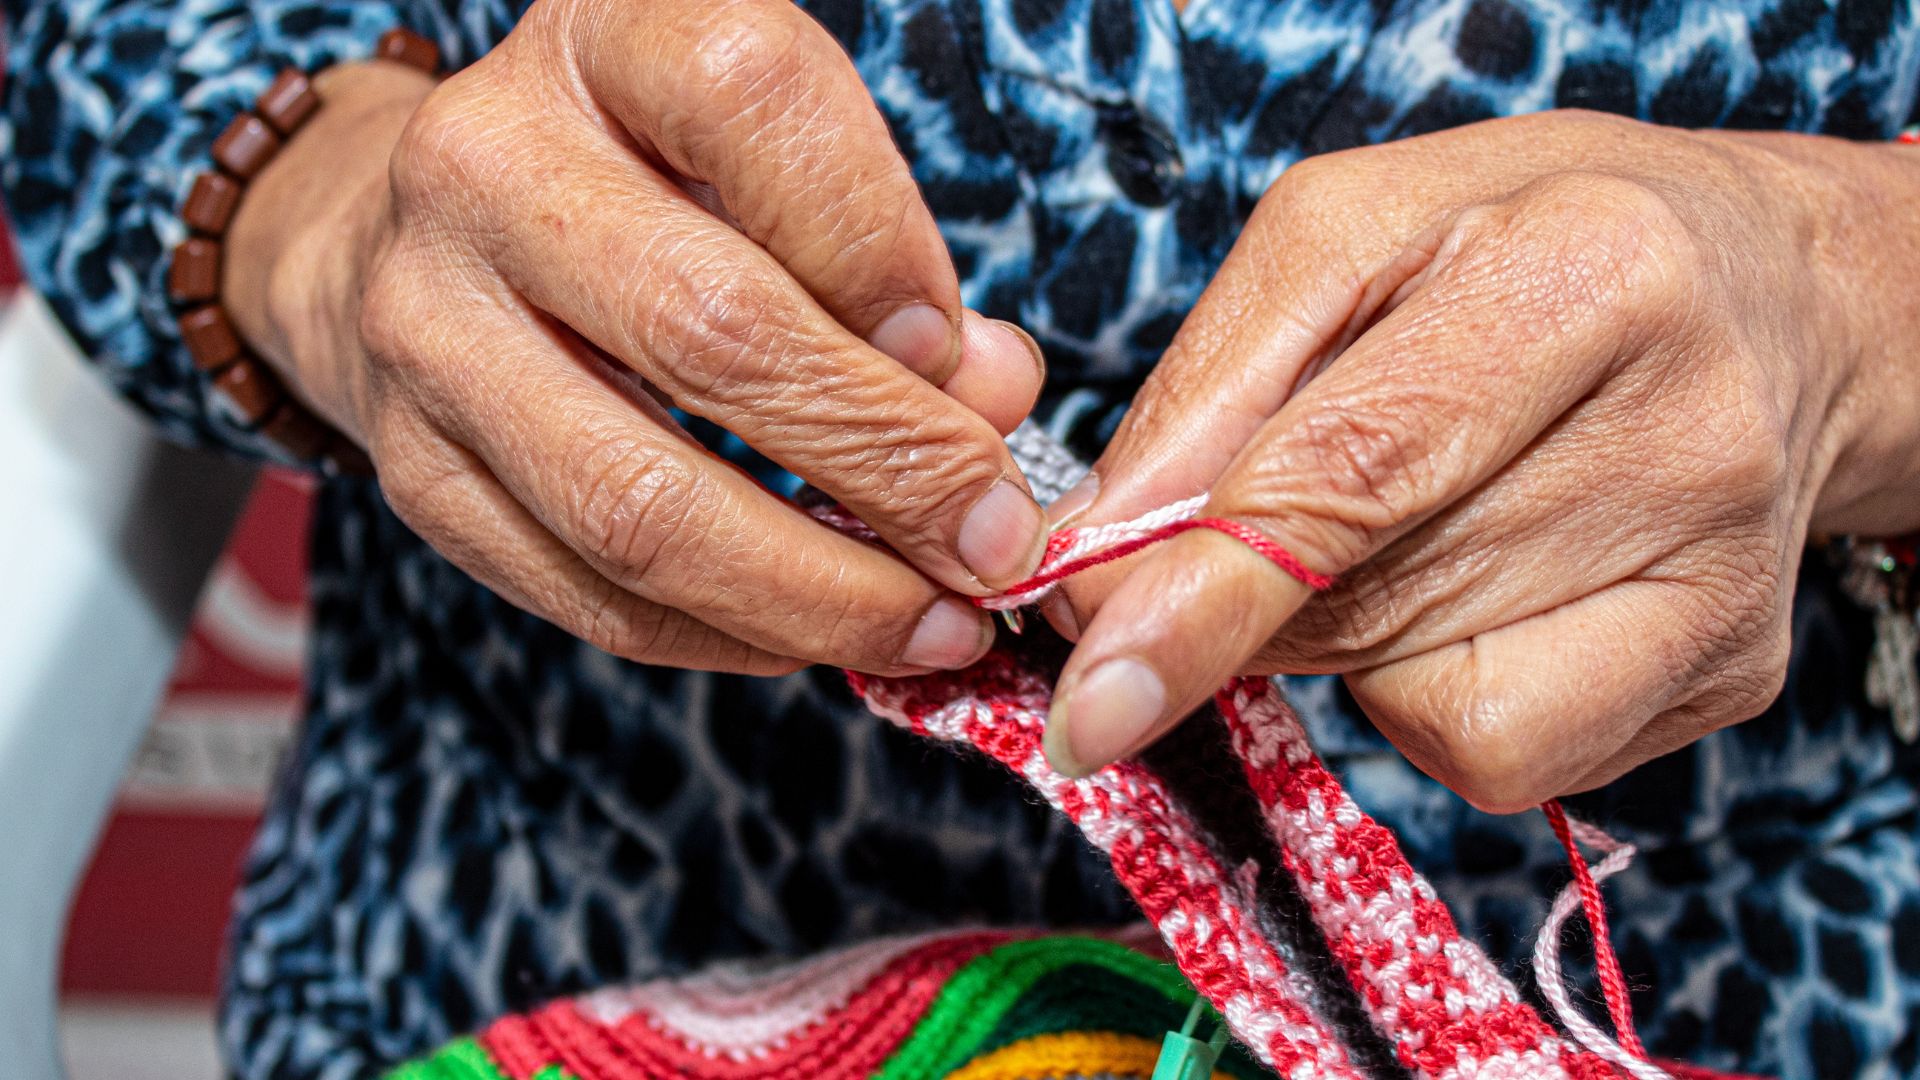 Fotografía tejedoras Barrios Unidos - Manos tejiendo crochet